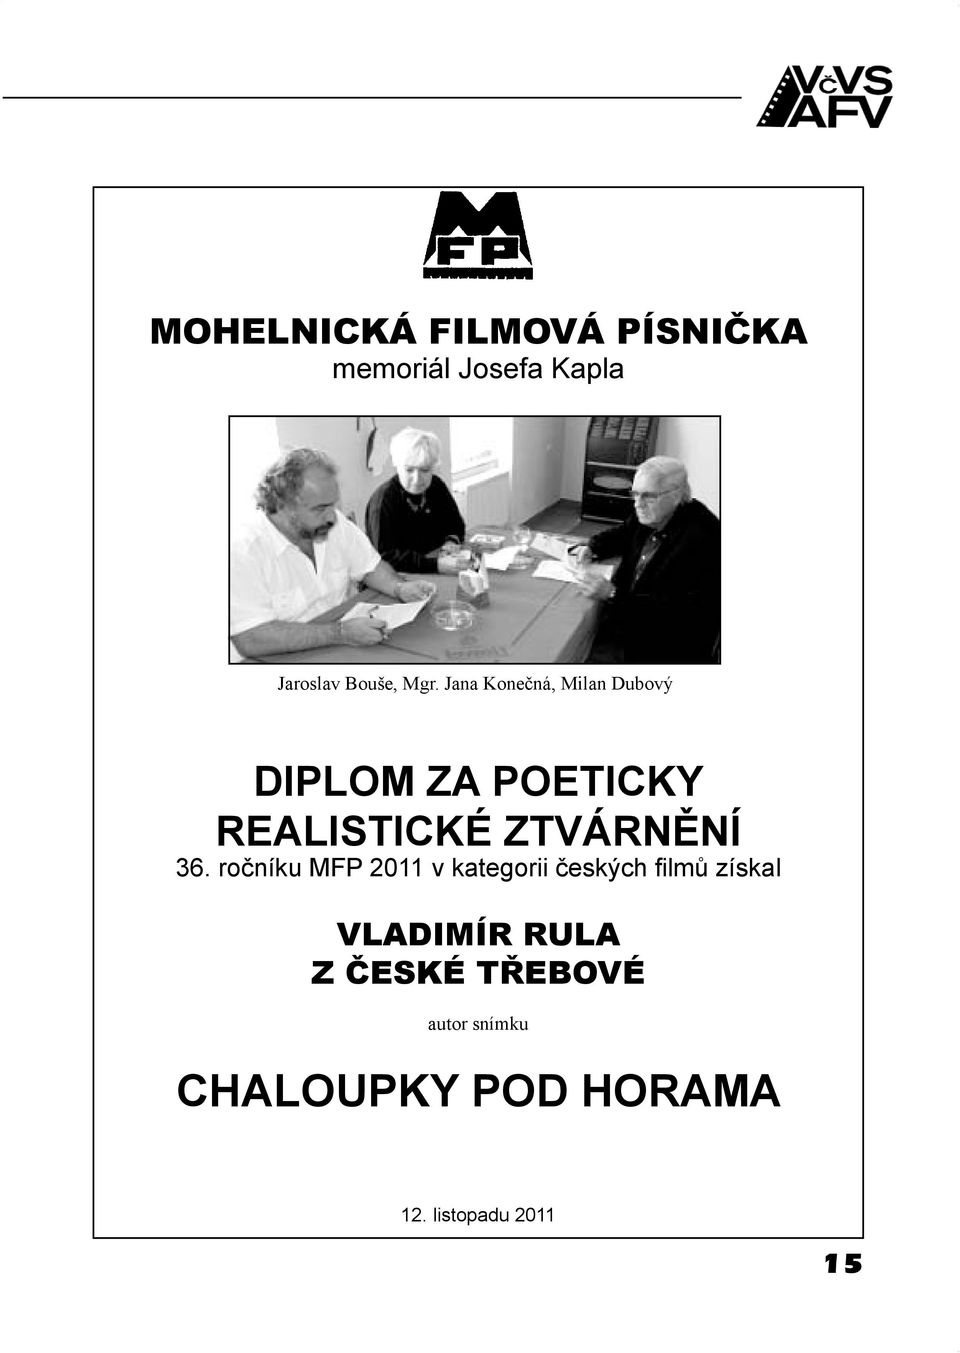 36. ročníku MFP 2011 v kategorii českých filmů získal VLADIMÍR RULA Z